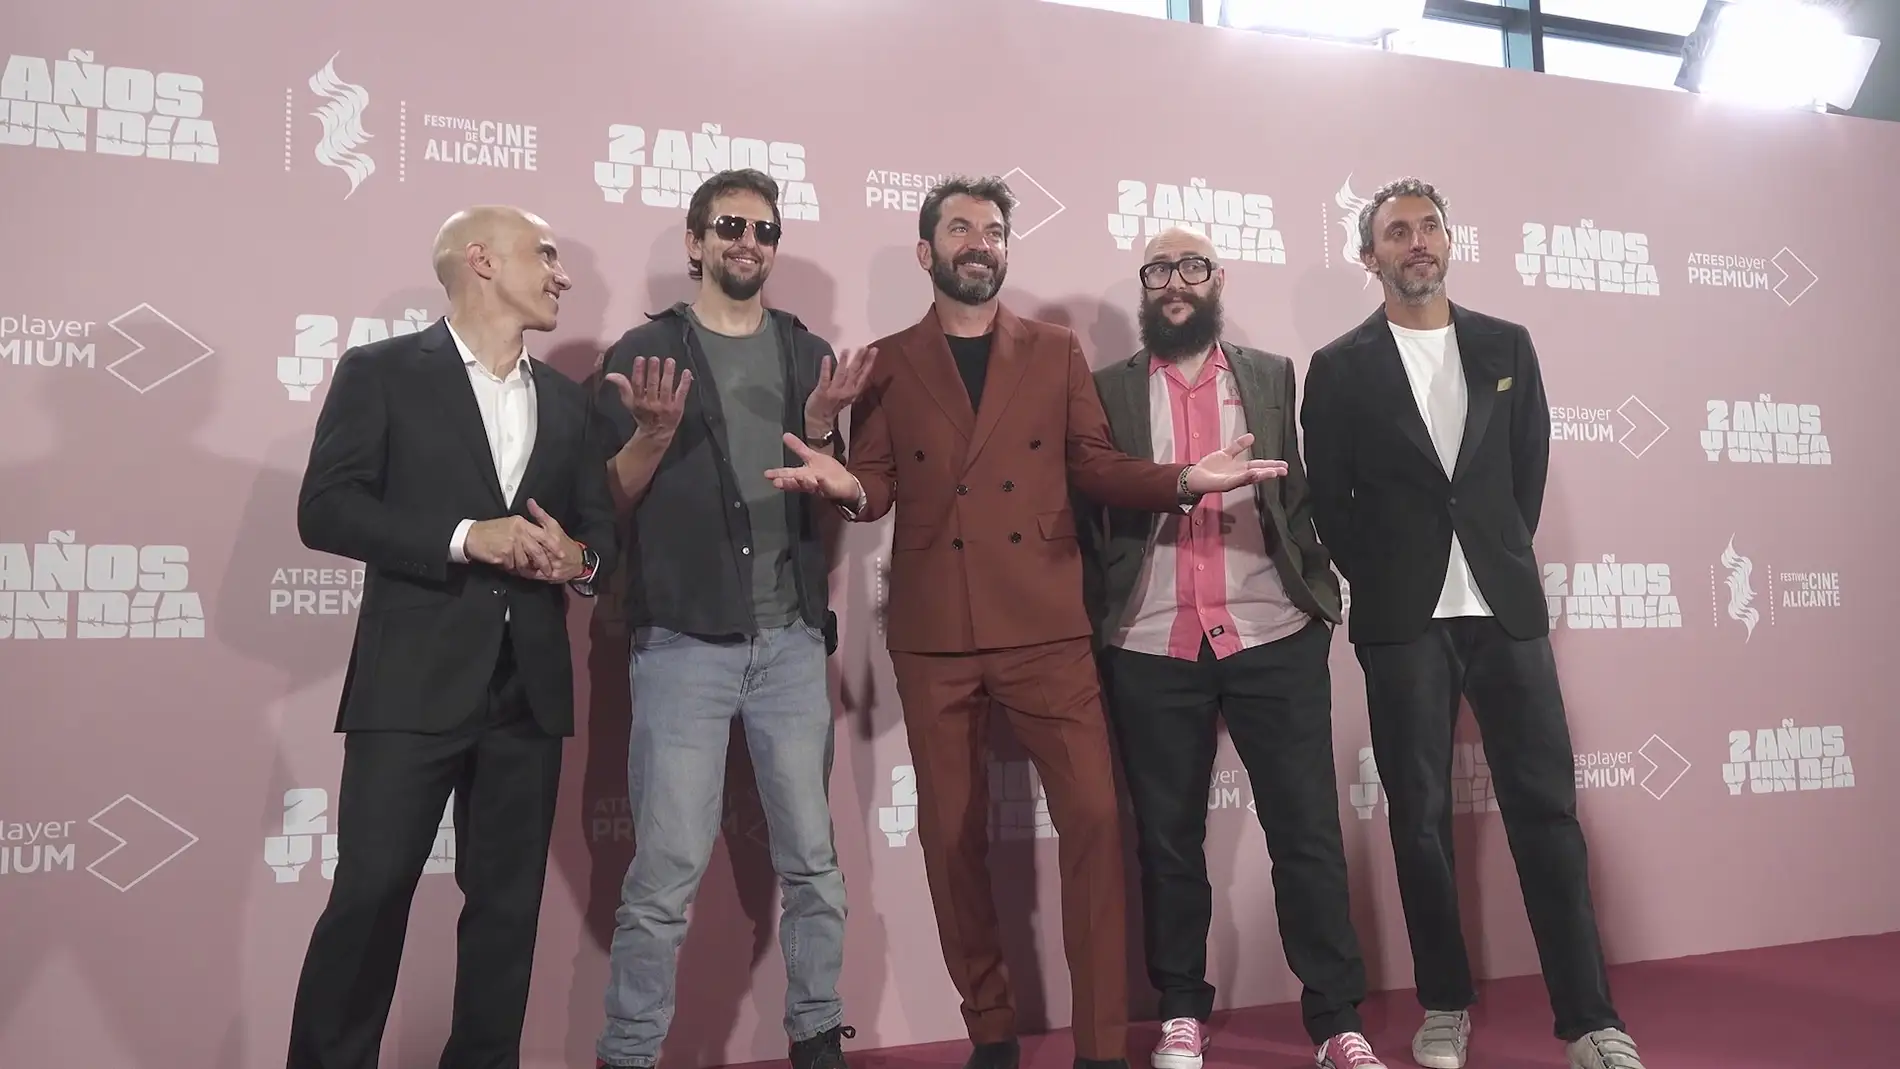 'Dos años y un día' se presenta en el Festival de Alicante: "Hacía falta una comedia muy loca y gamberra que no es habitual en televisión"